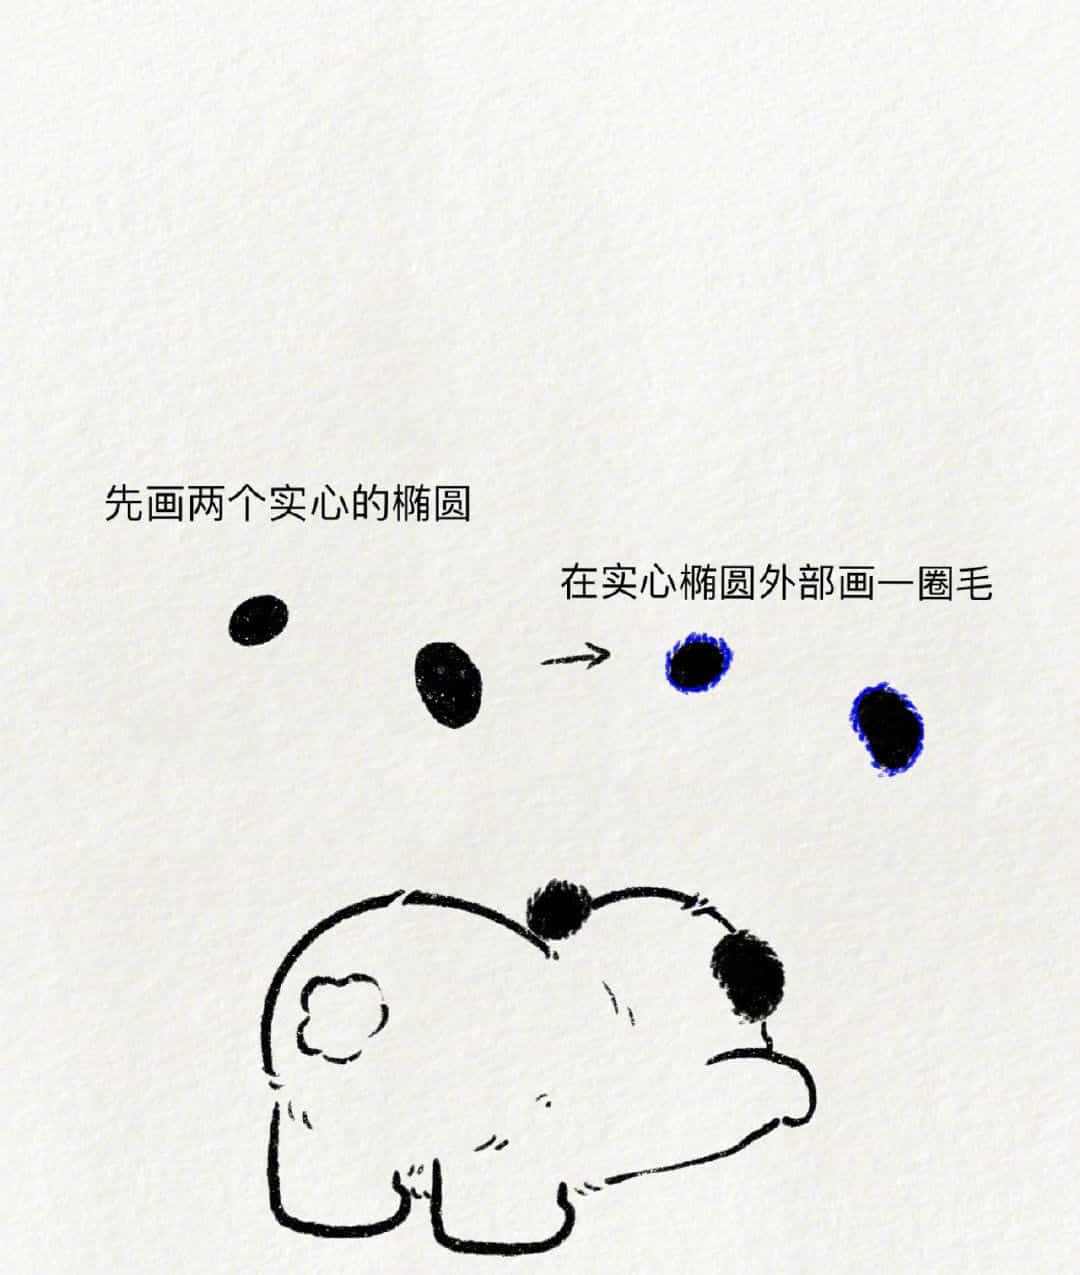 可爱动物大熊猫趴地撅屁股简笔画画法教程图片_8